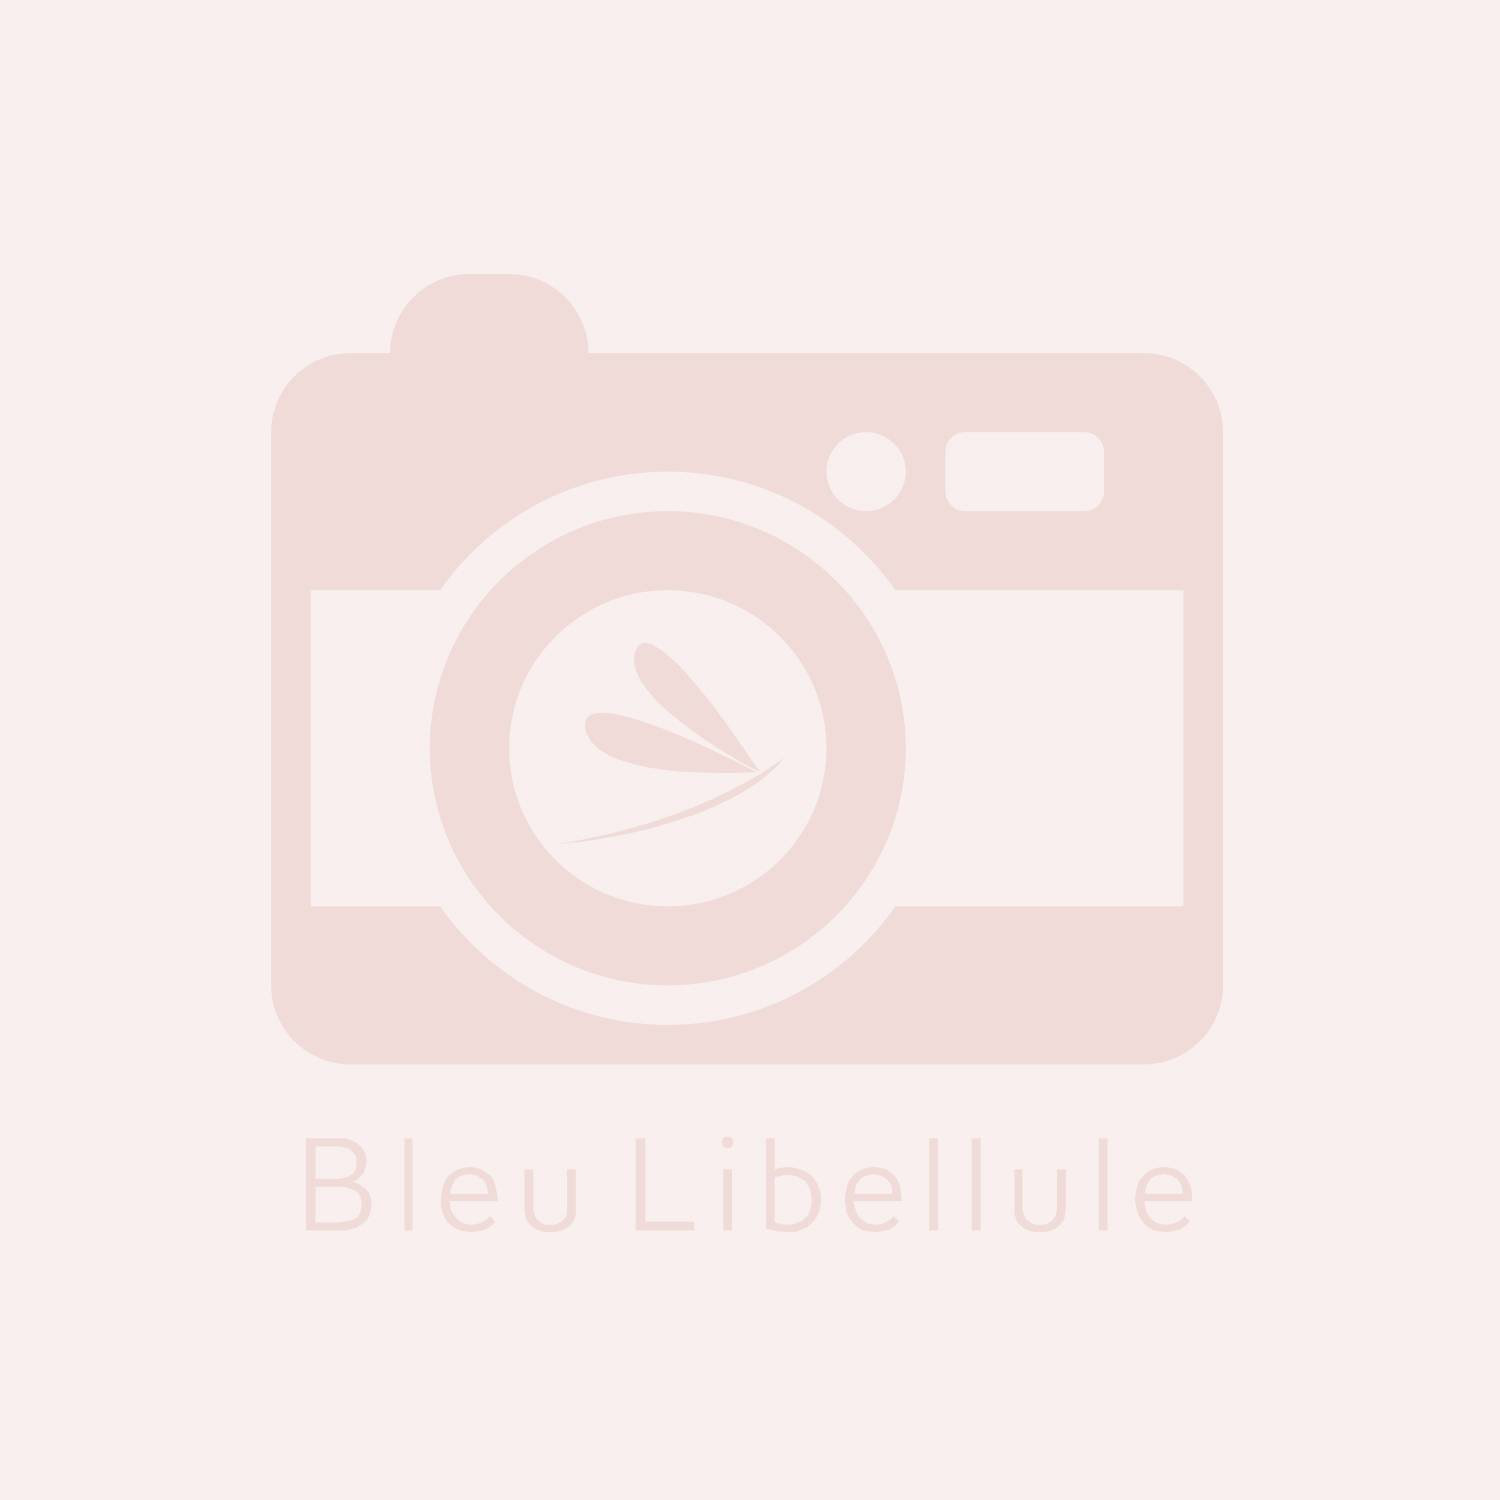 Bleu Libellule Eau de parfum Romantique spray 15ml, Femme